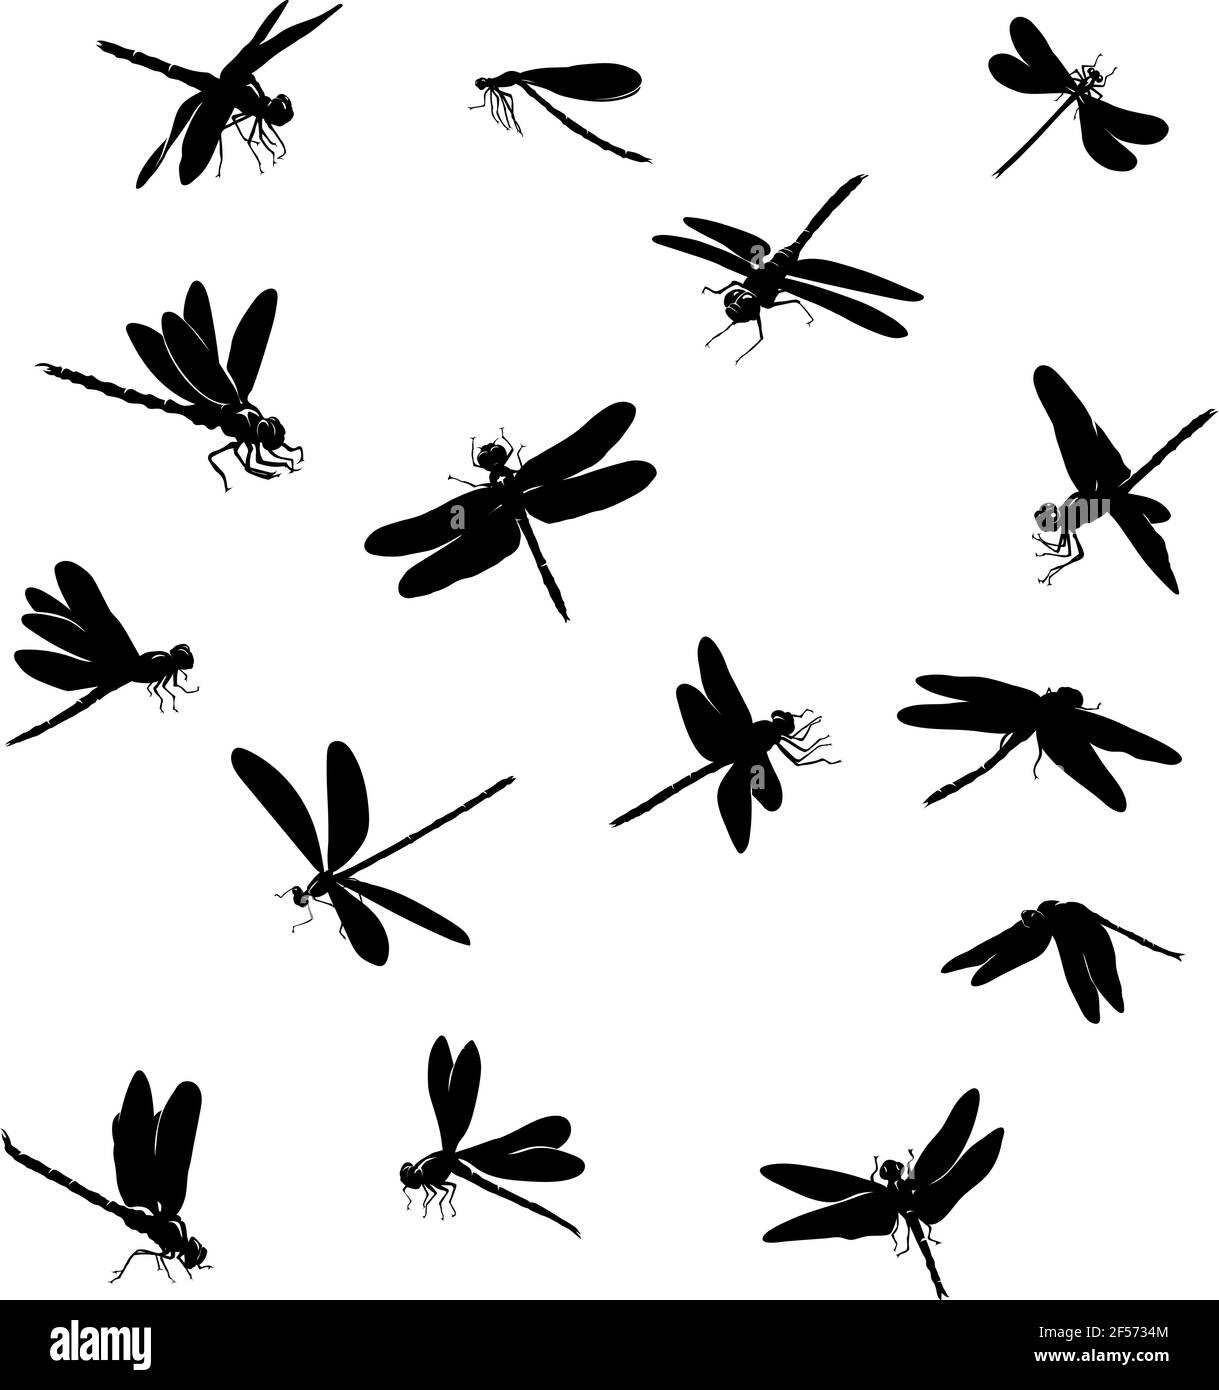 libellule, insecte, diverses poses, mouvements et prétentations de figures, noir, silhouette noire, motif Illustration de Vecteur